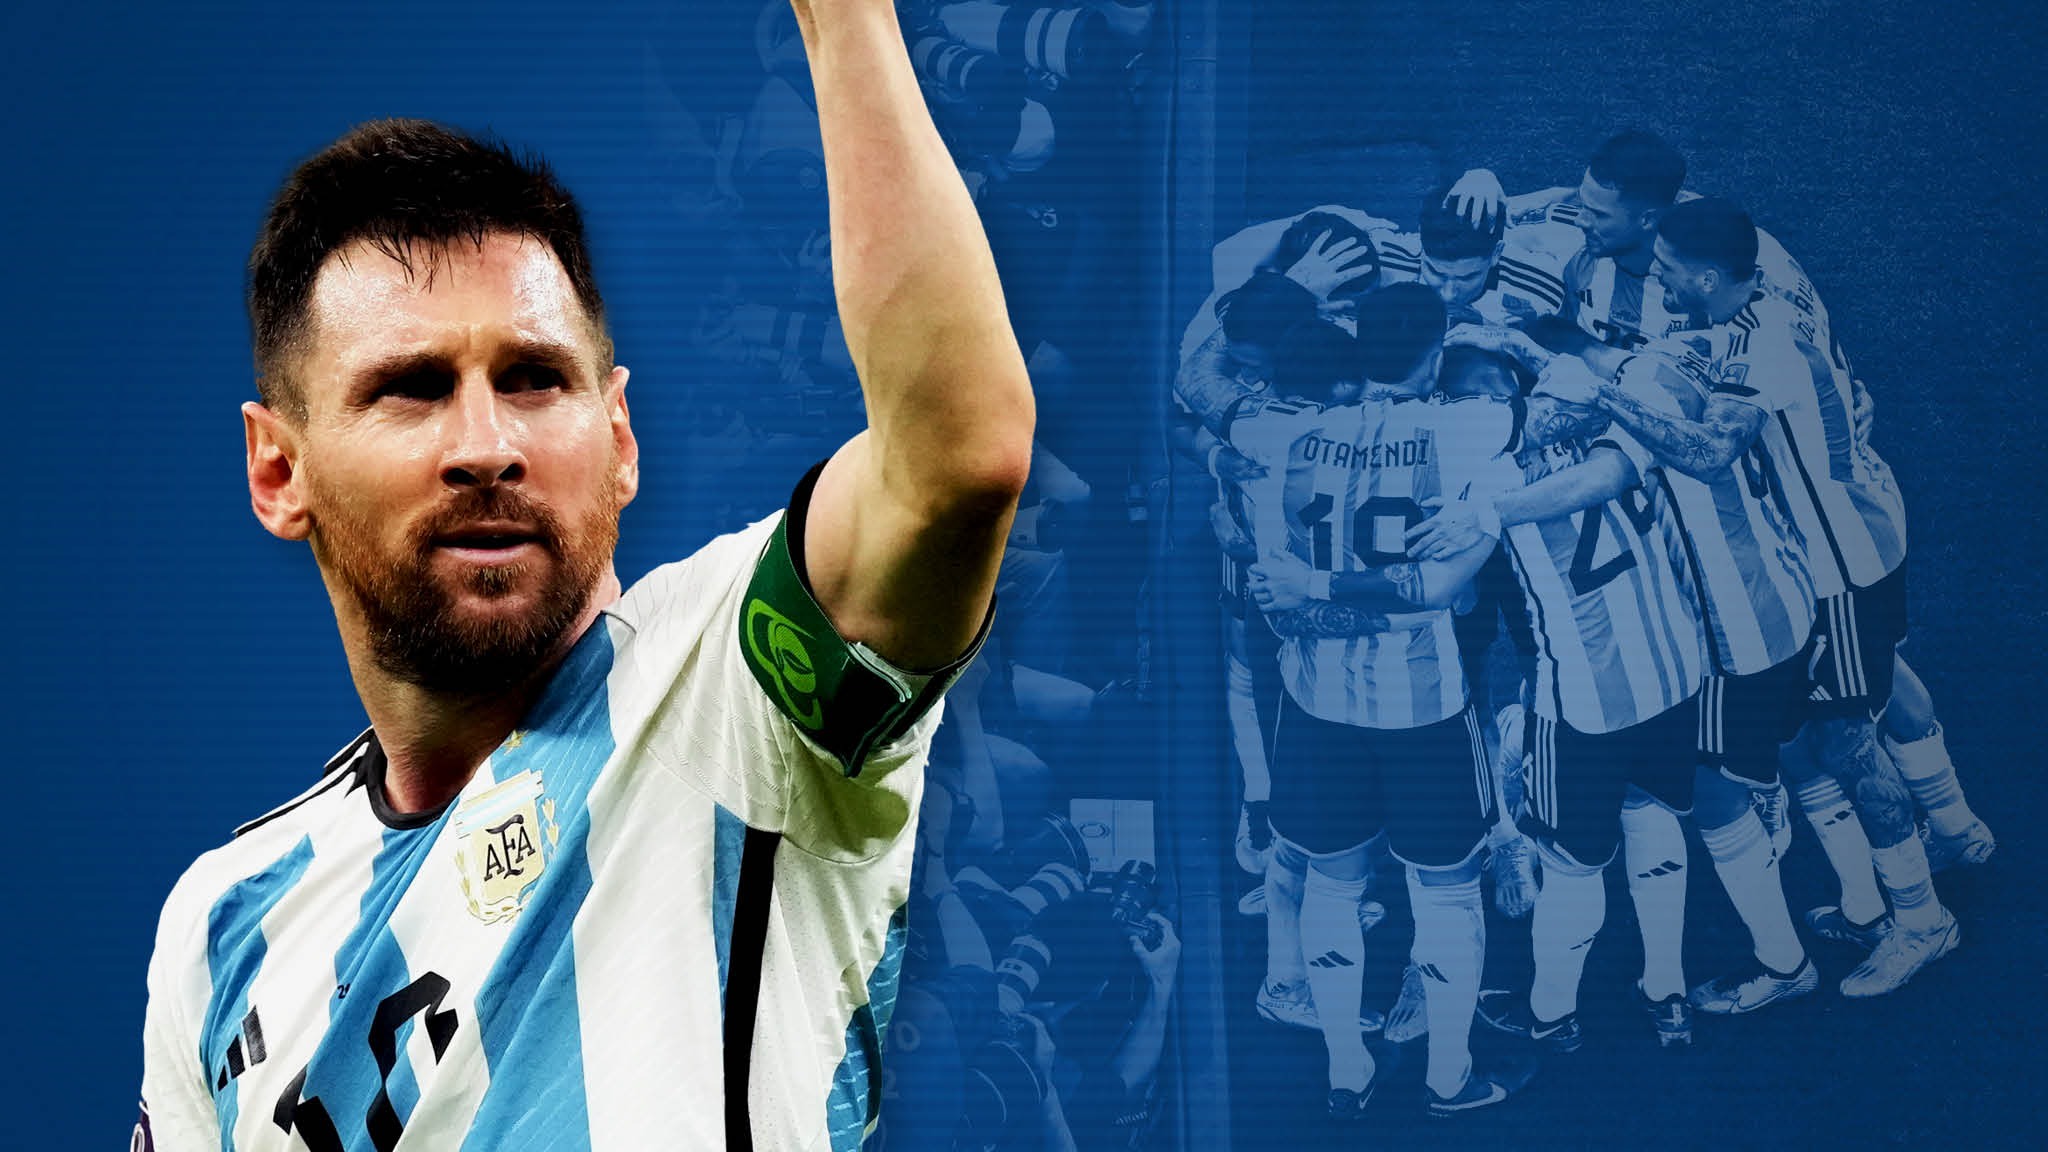 Argentina, Lionel Messi, thương hiệu Tranquilo - khi sự tĩnh lặng phát ra lời khuyên, được phát triển bởi Messi và các đồng đội trong đội tuyển Argentina, bạn còn chần chừ gì mà không nhận một phần của sự tĩnh lặng đó?